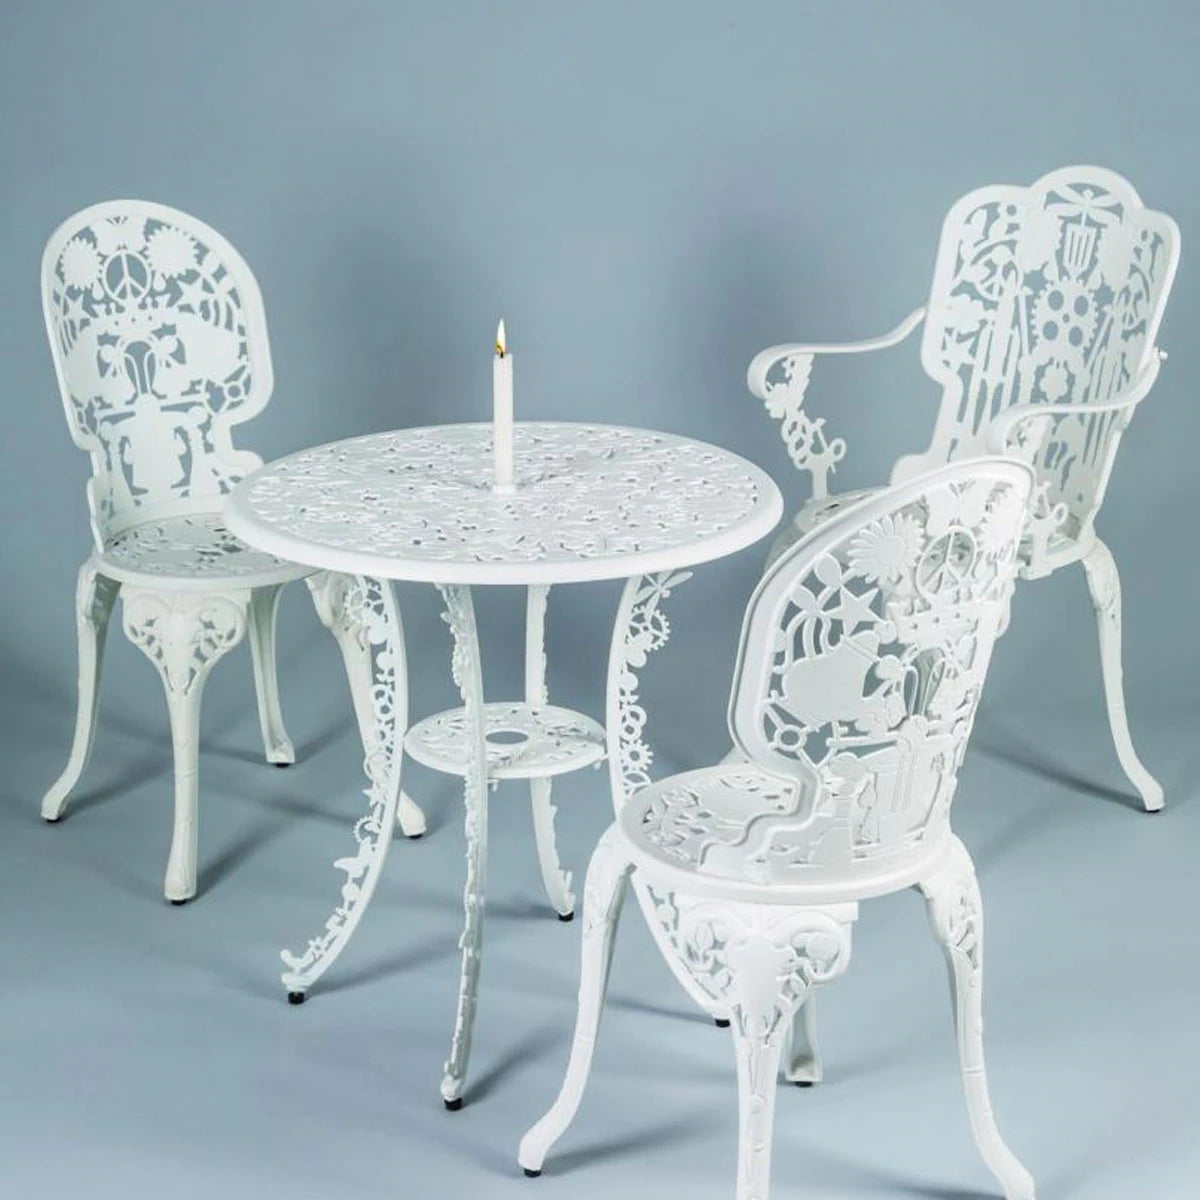 Garden chair INDUSTRY white